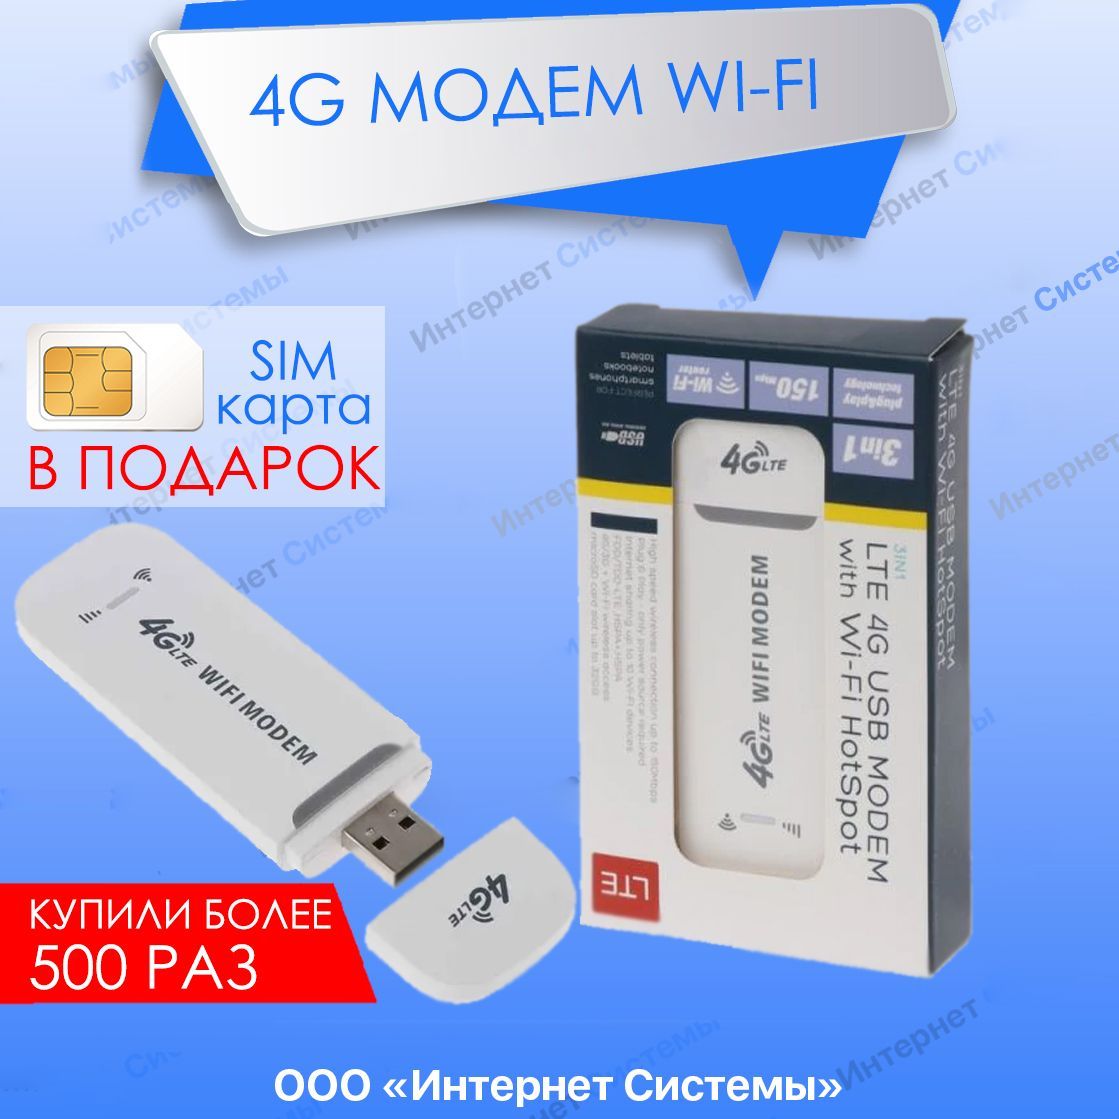 3G модемы, купить 3g-модем в Одессе, цена | centerforstrategy.ru